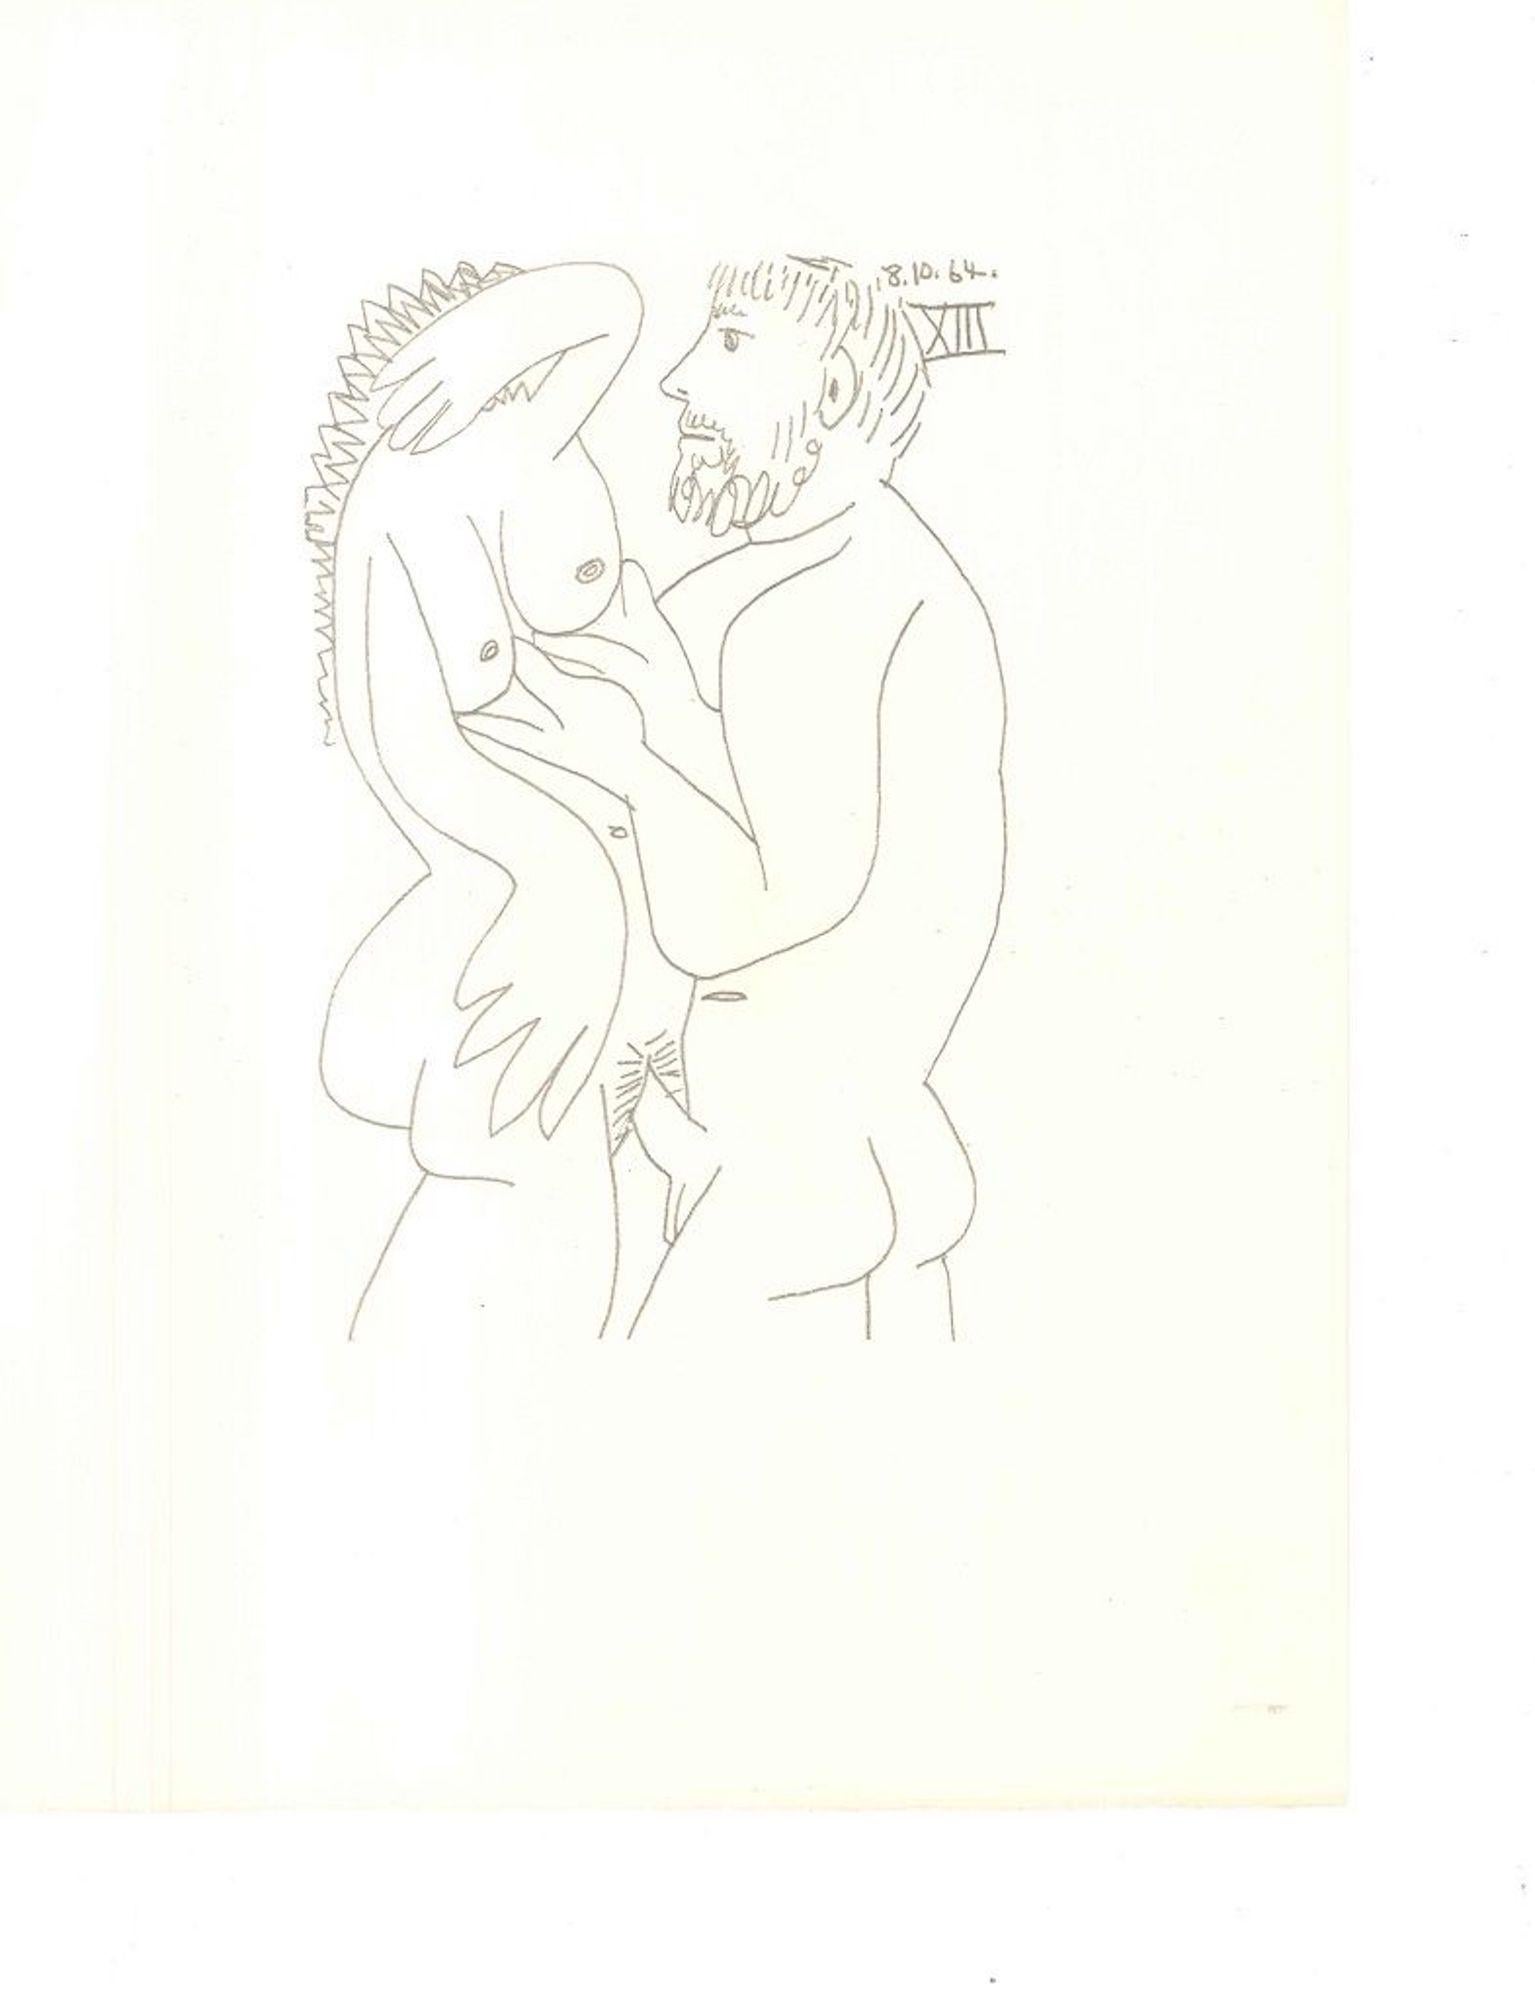 (after) Pablo Picasso Print - Le Goût du Bonheur - 18.10.64 XIII - Lithograph After P. Picasso